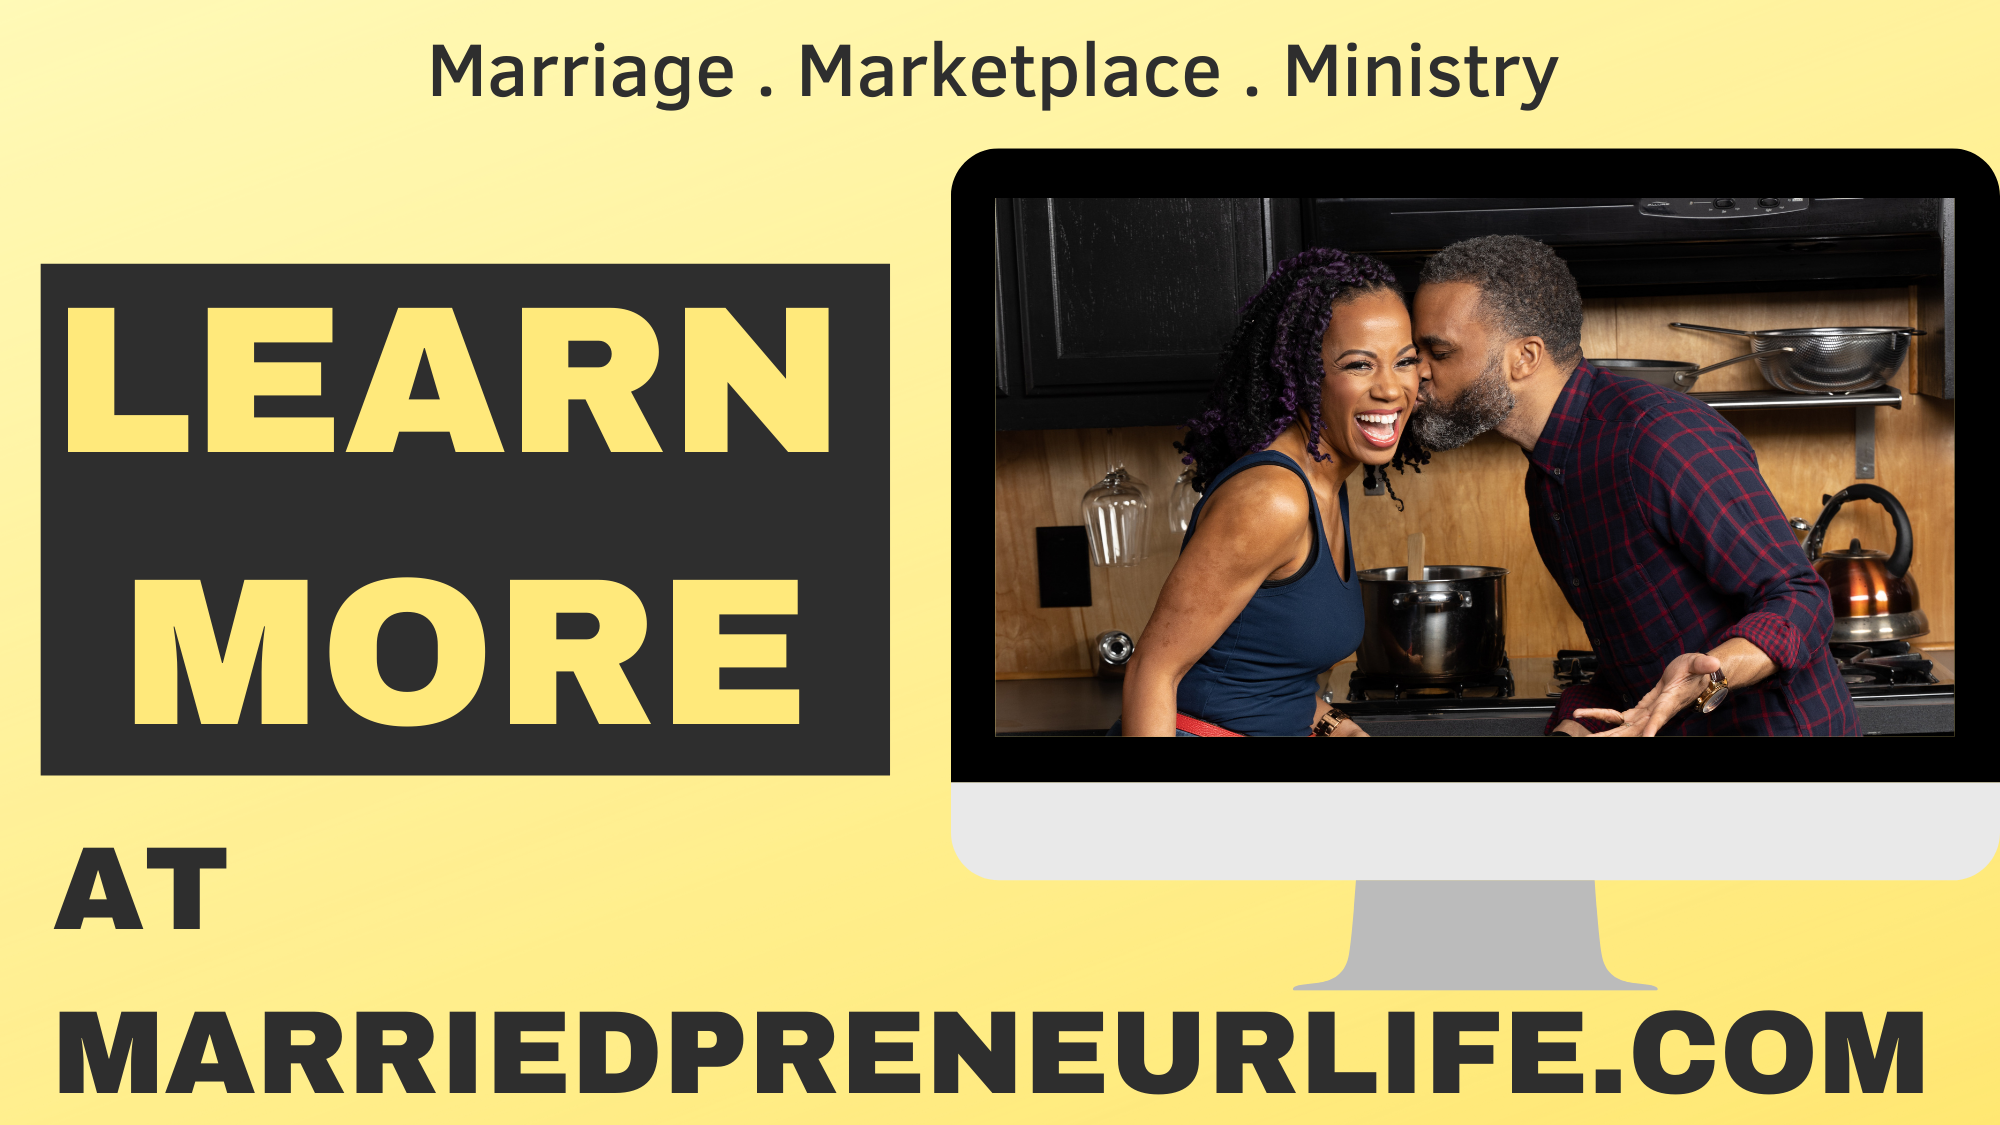 MarriedpreneurLife.com